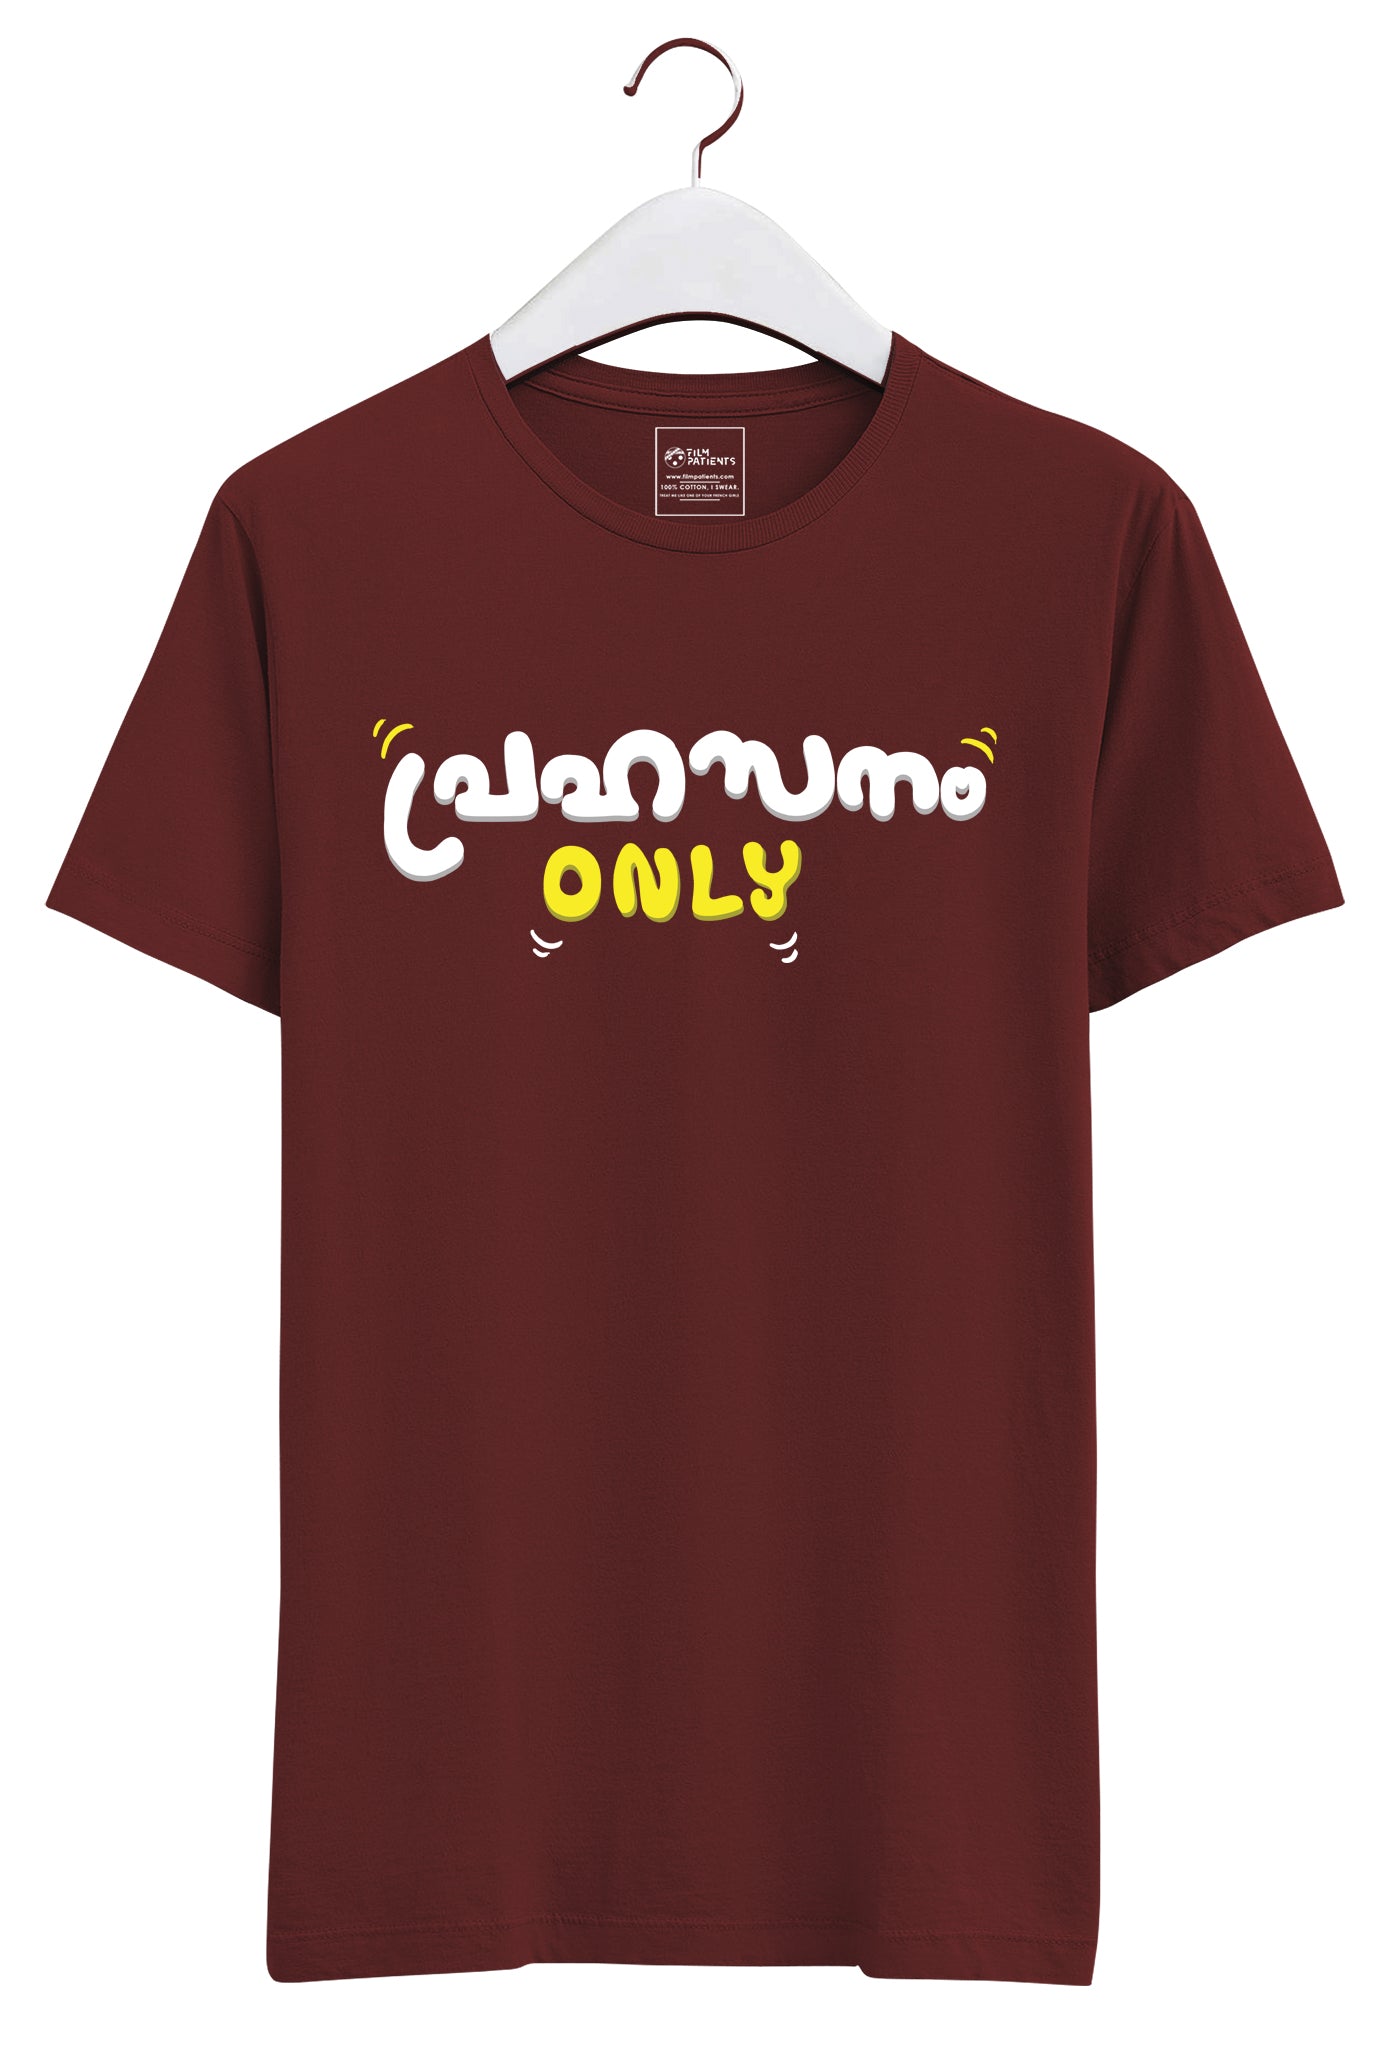 Buy Prahasanam Only Tshirts Online.